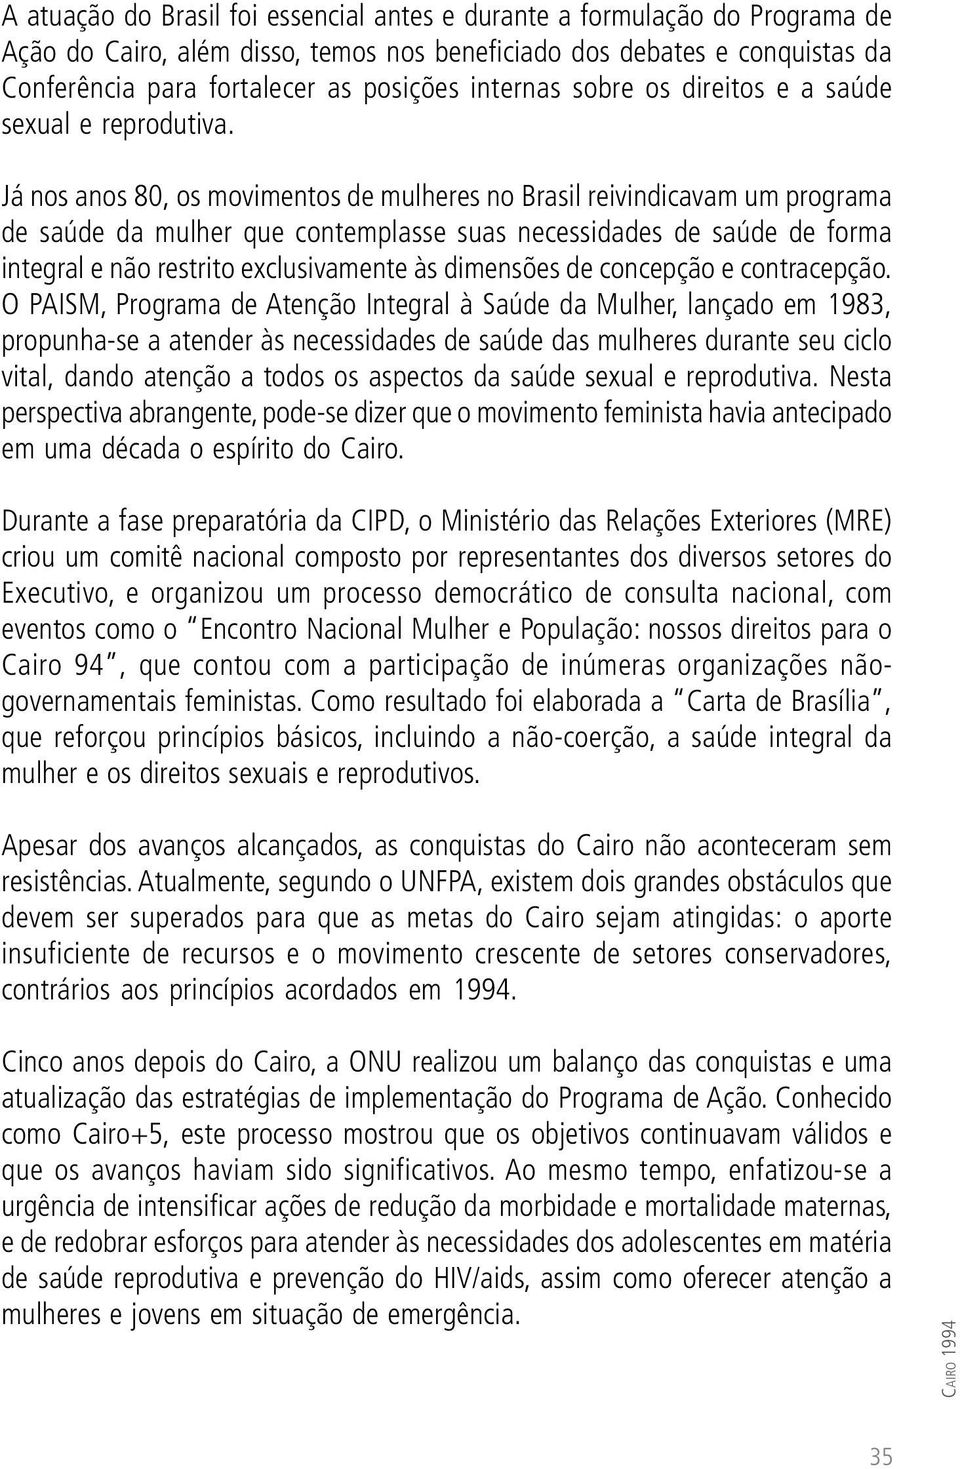 Já nos anos 80, os movimentos de mulheres no Brasil reivindicavam um programa de saúde da mulher que contemplasse suas necessidades de saúde de forma integral e não restrito exclusivamente às